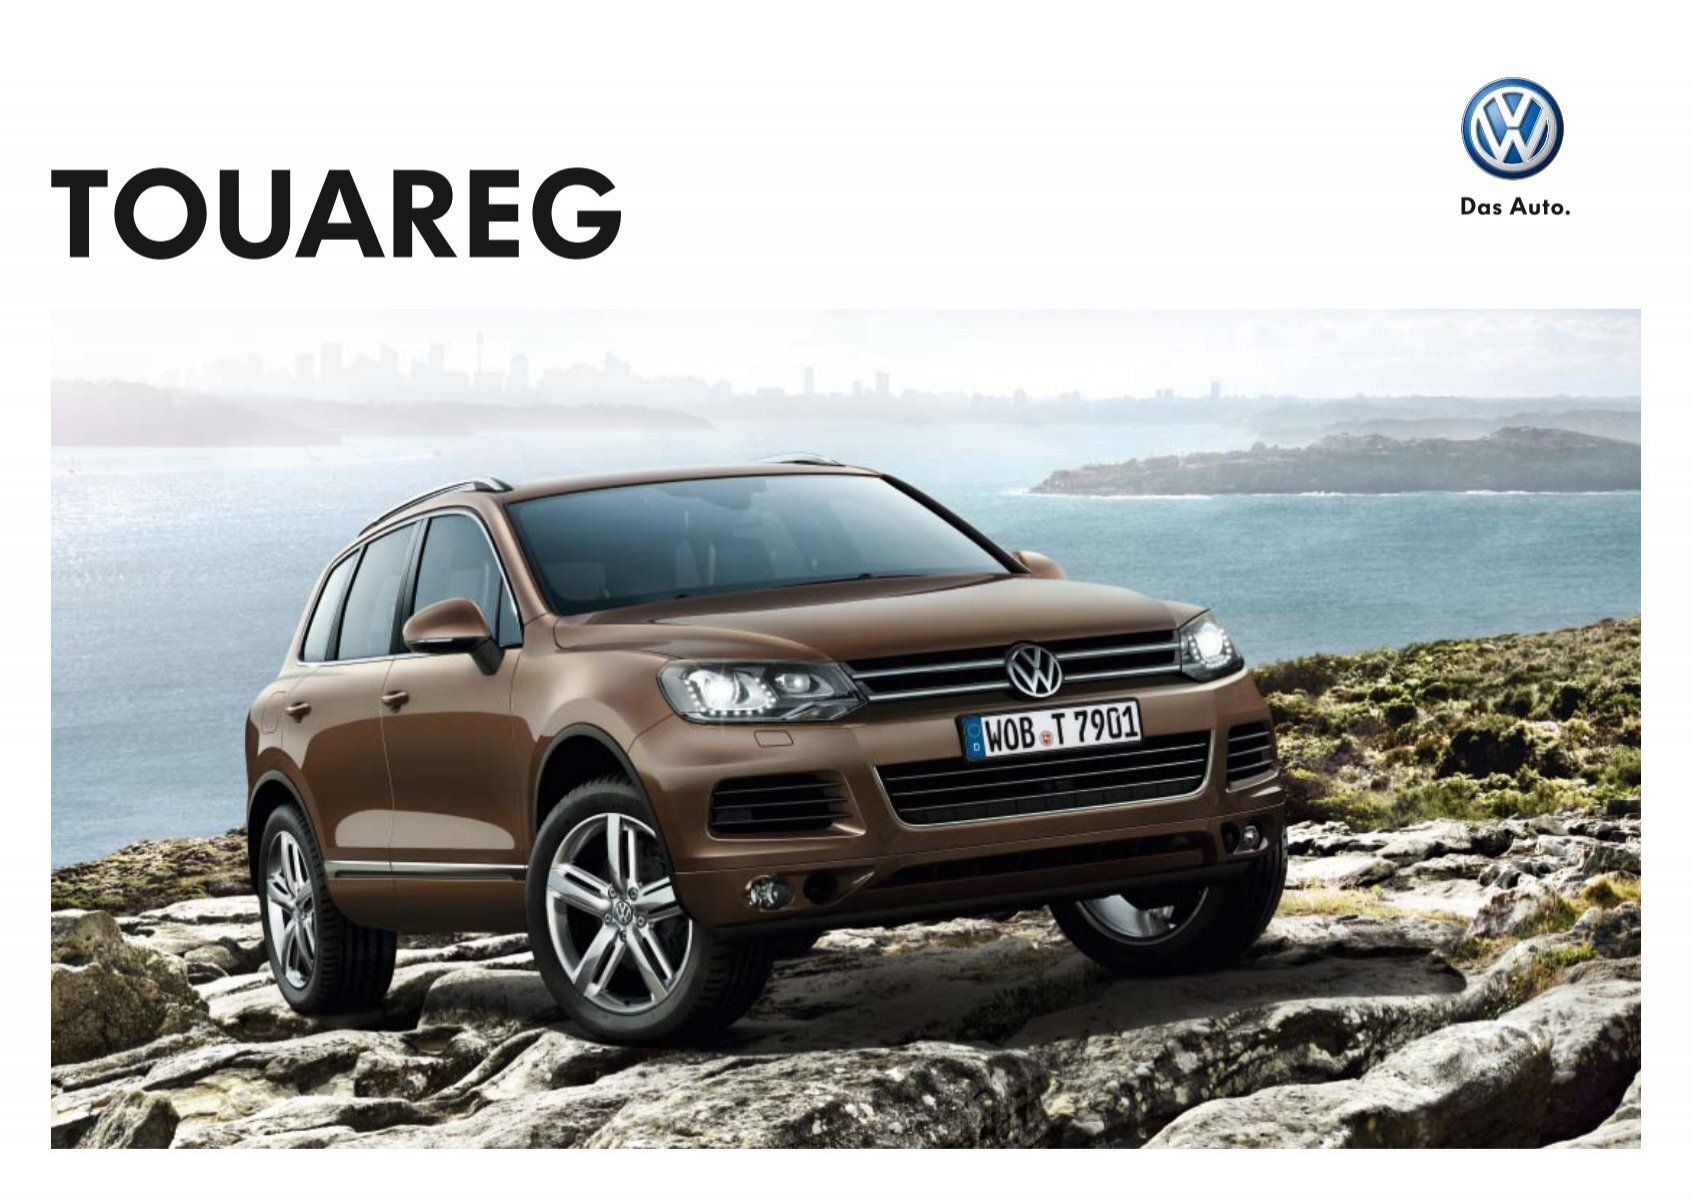 TOUAREG - Volkswagen AG